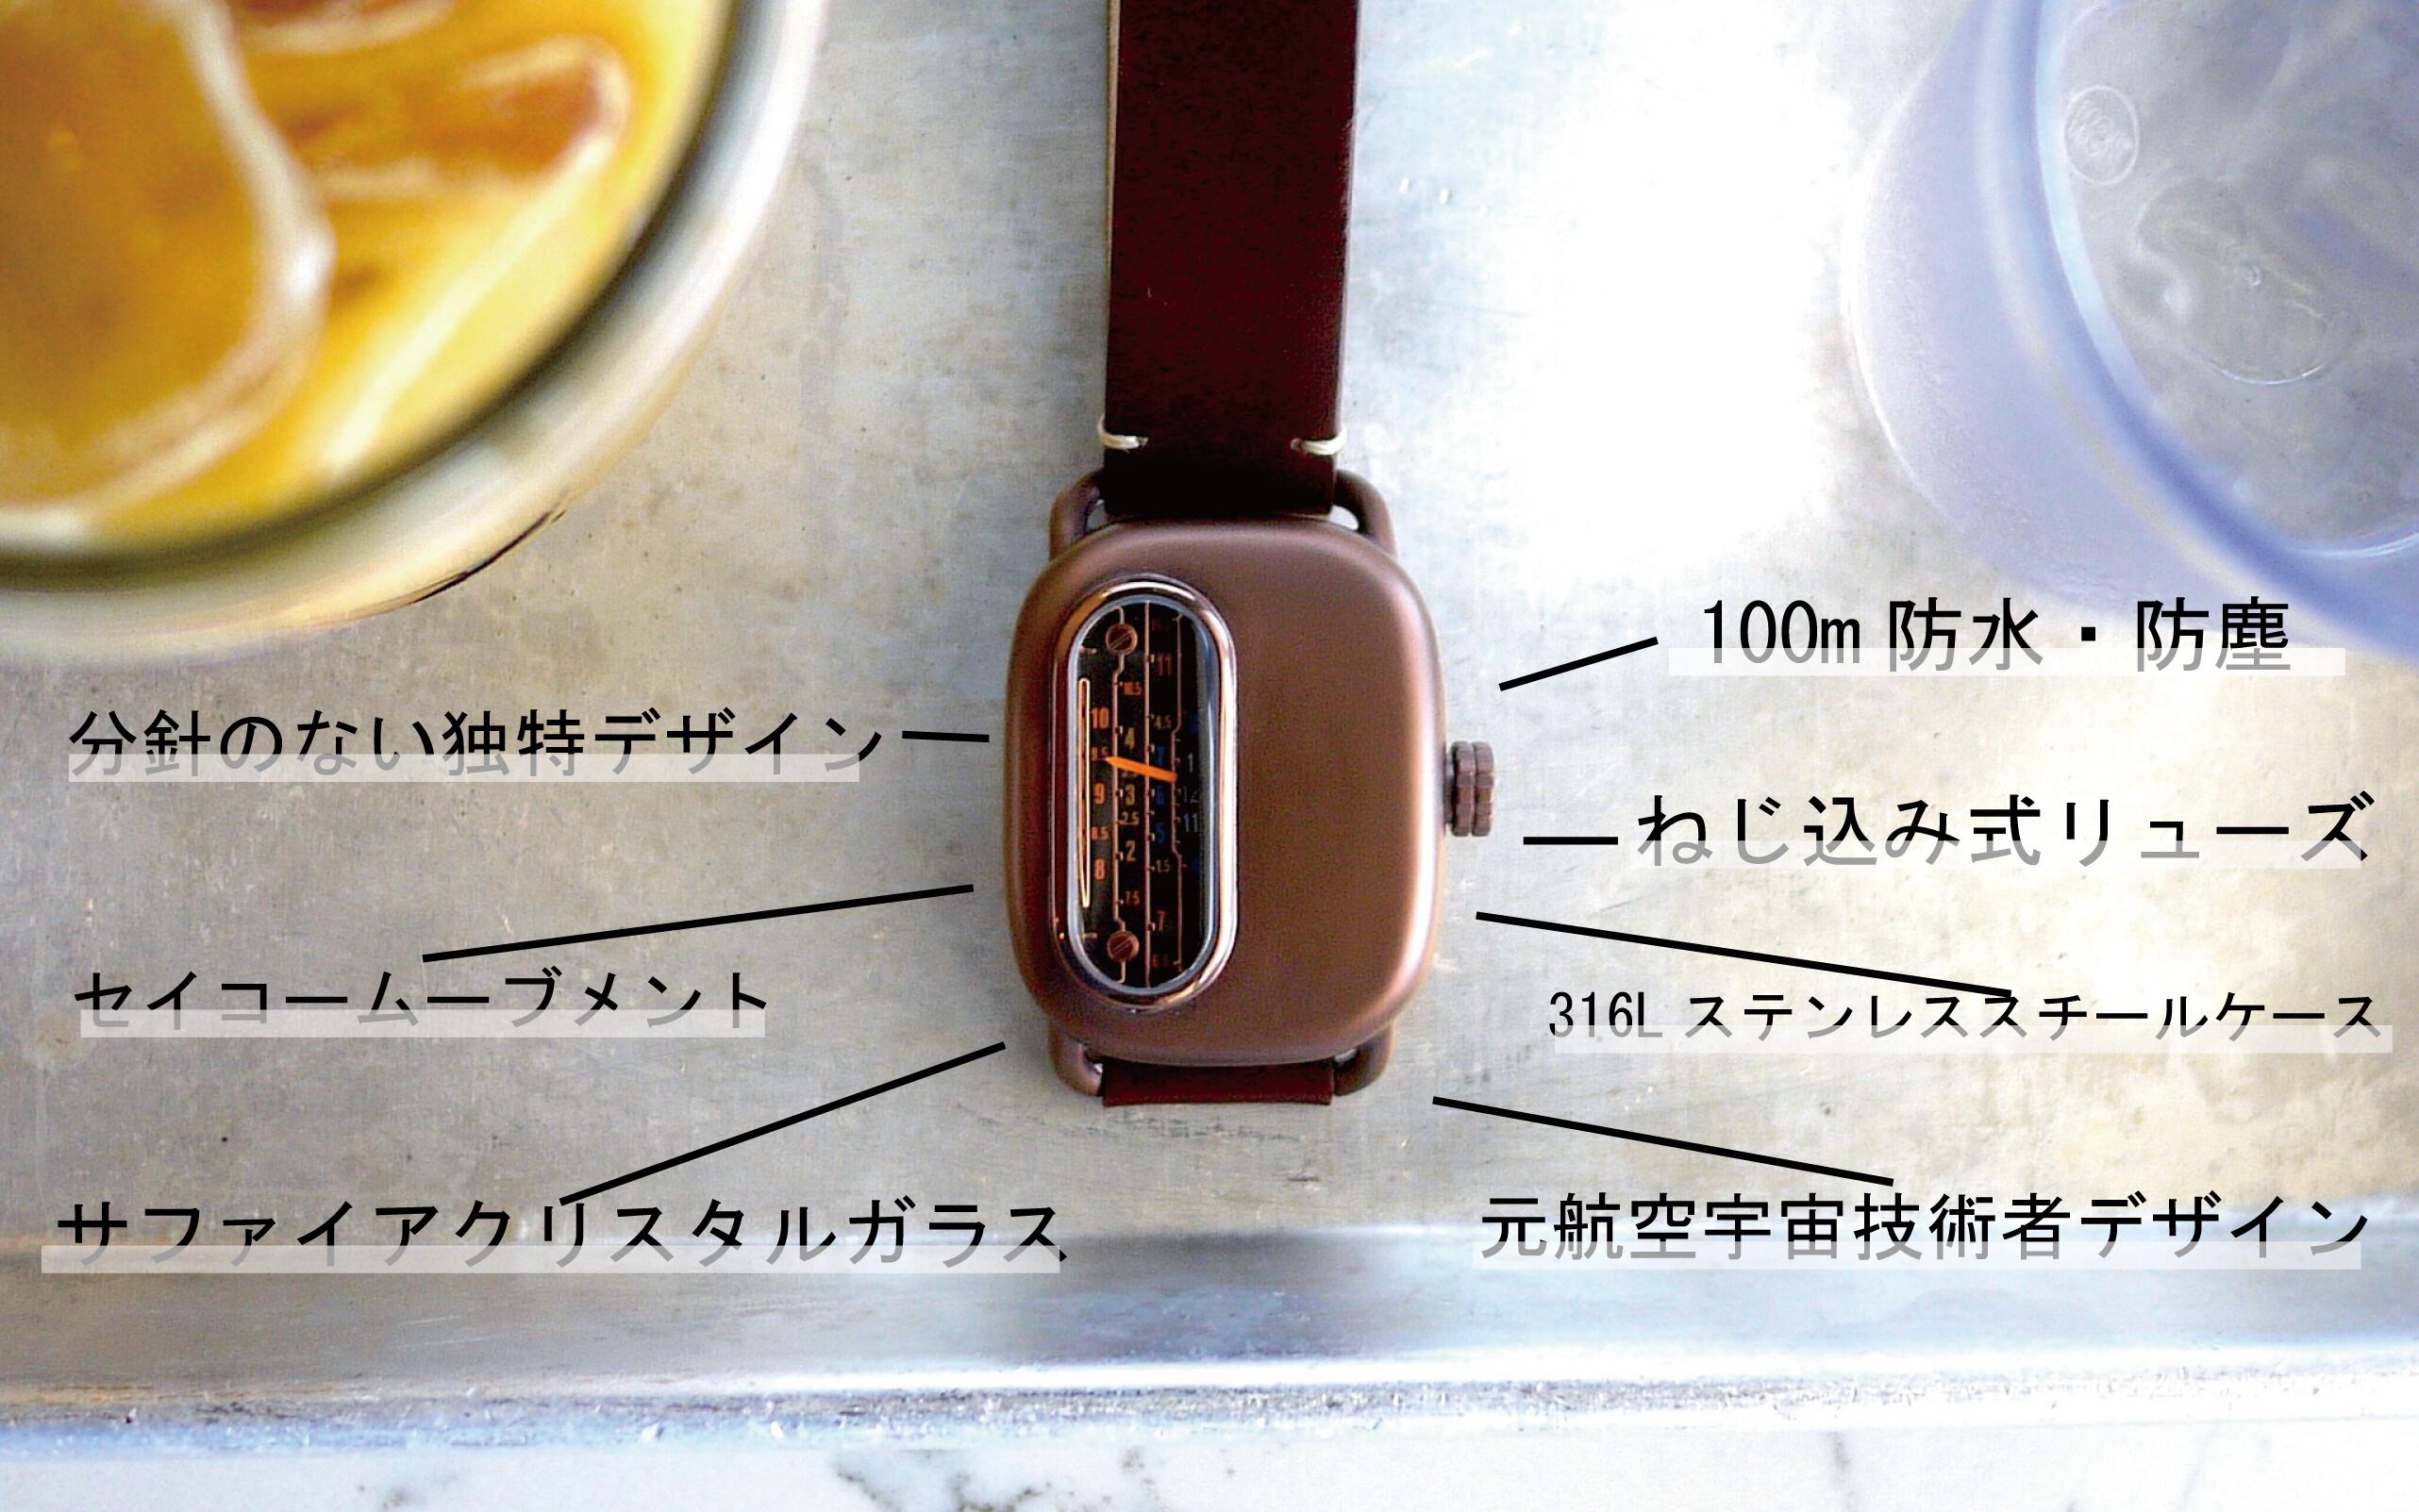 上等 Ganymede series01 ガニメデ 機械式 腕時計 asakusa.sub.jp